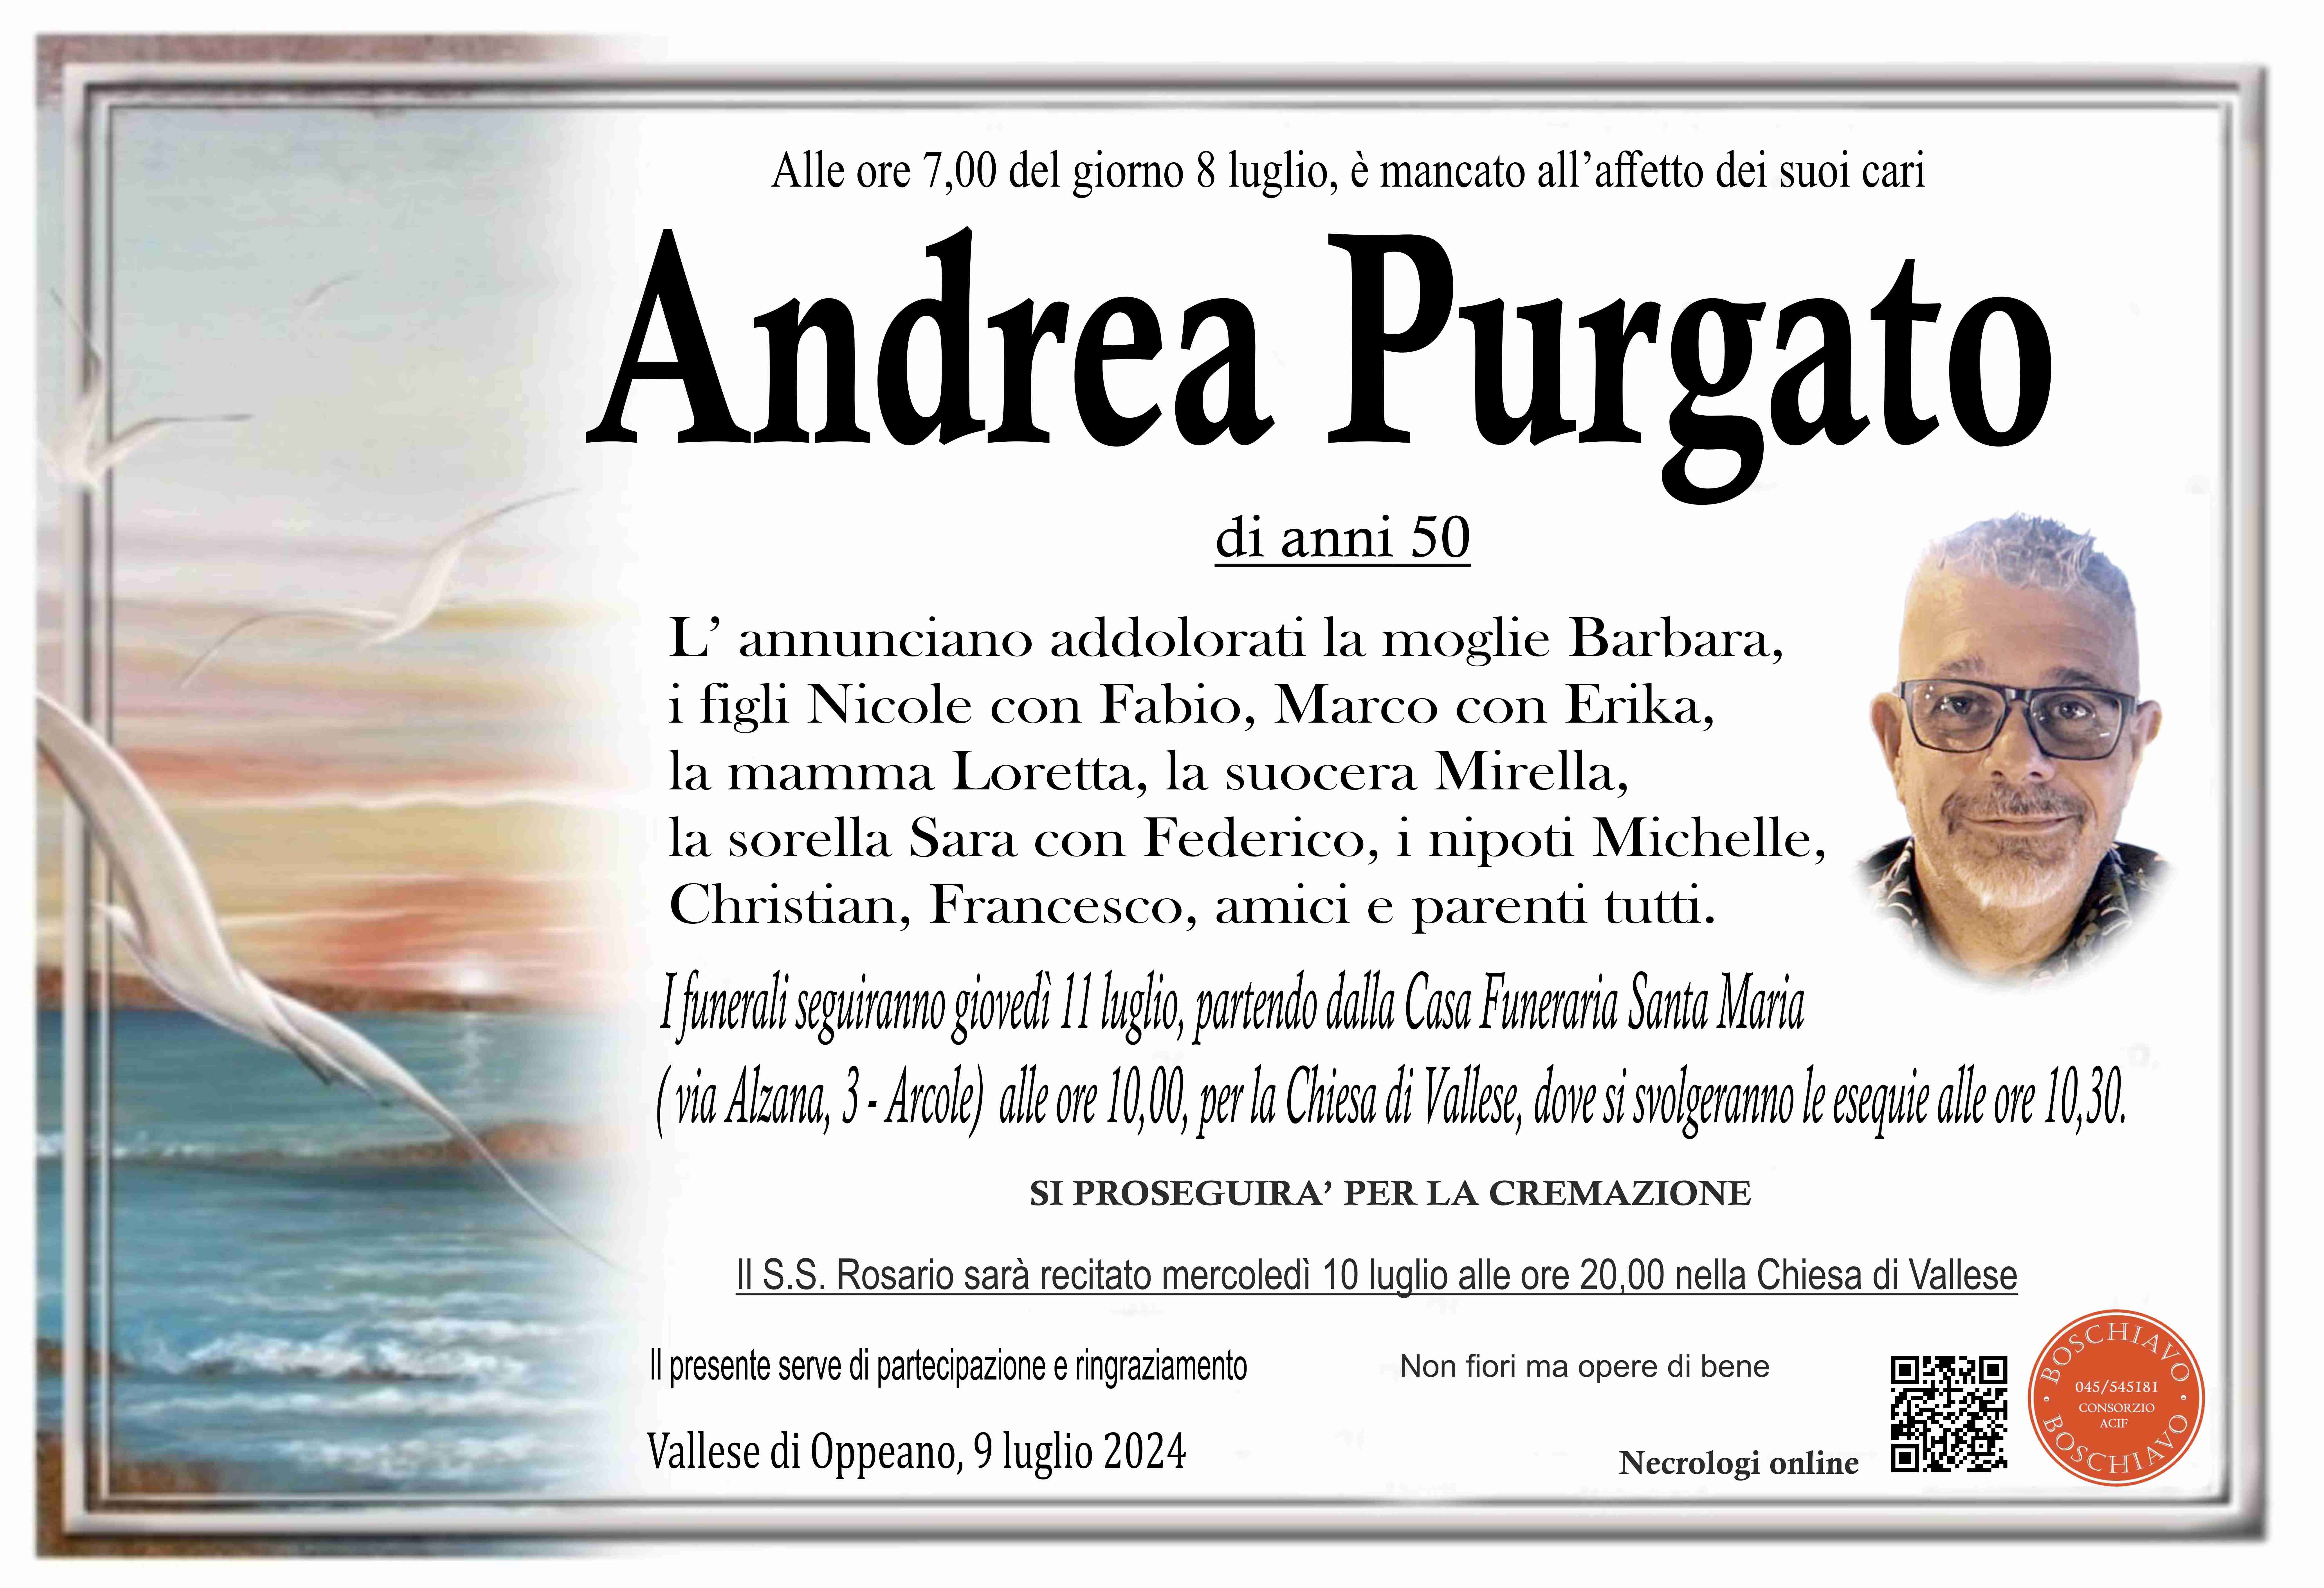 Purgato Andrea